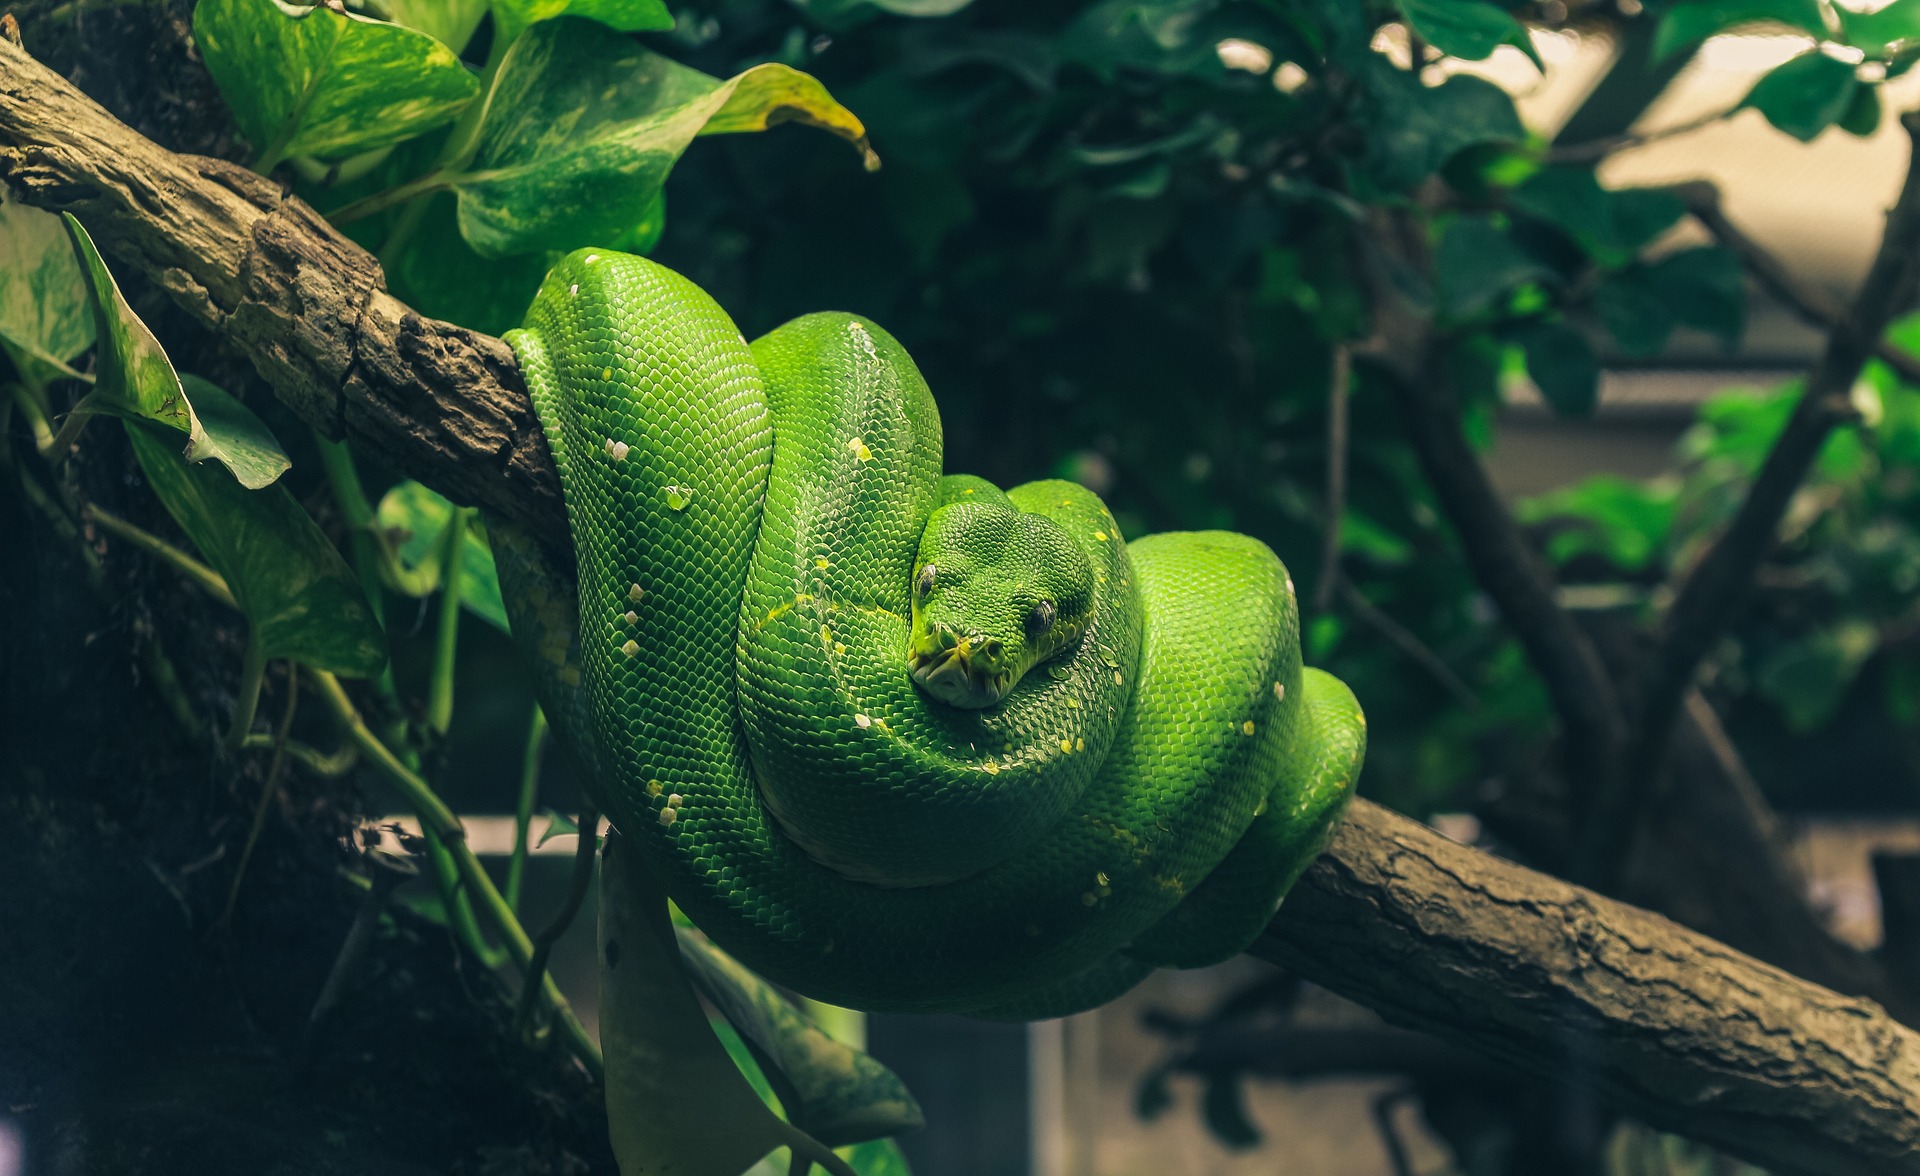 Pythonschlangen